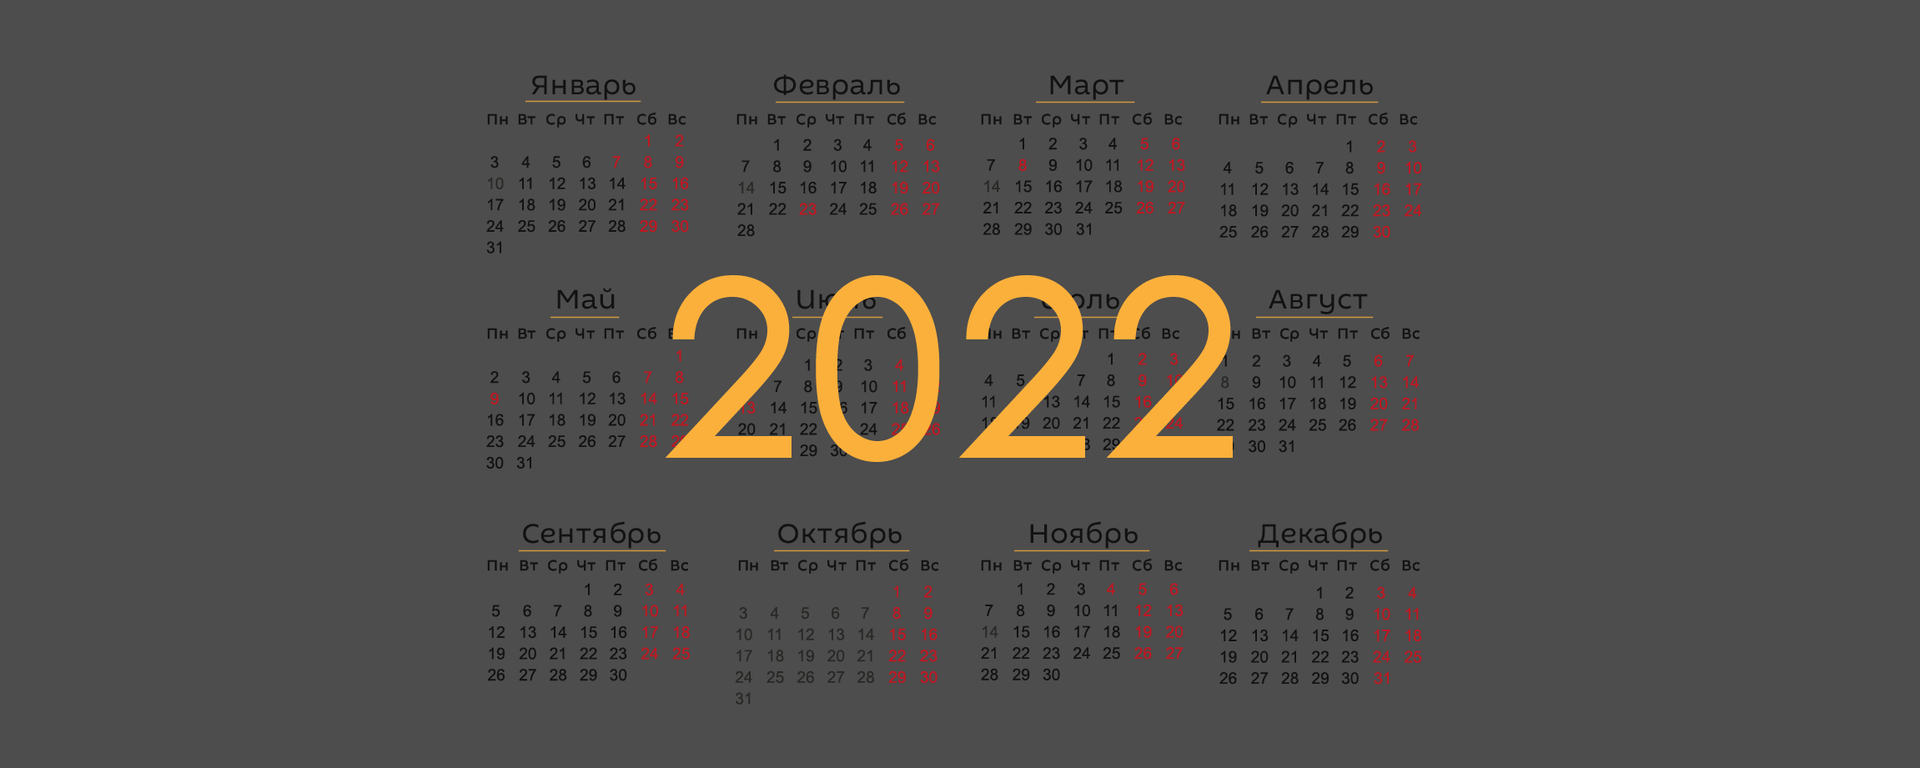 График переносов рабочих дней в 2022 году - Sputnik Беларусь, 1920, 14.12.2021